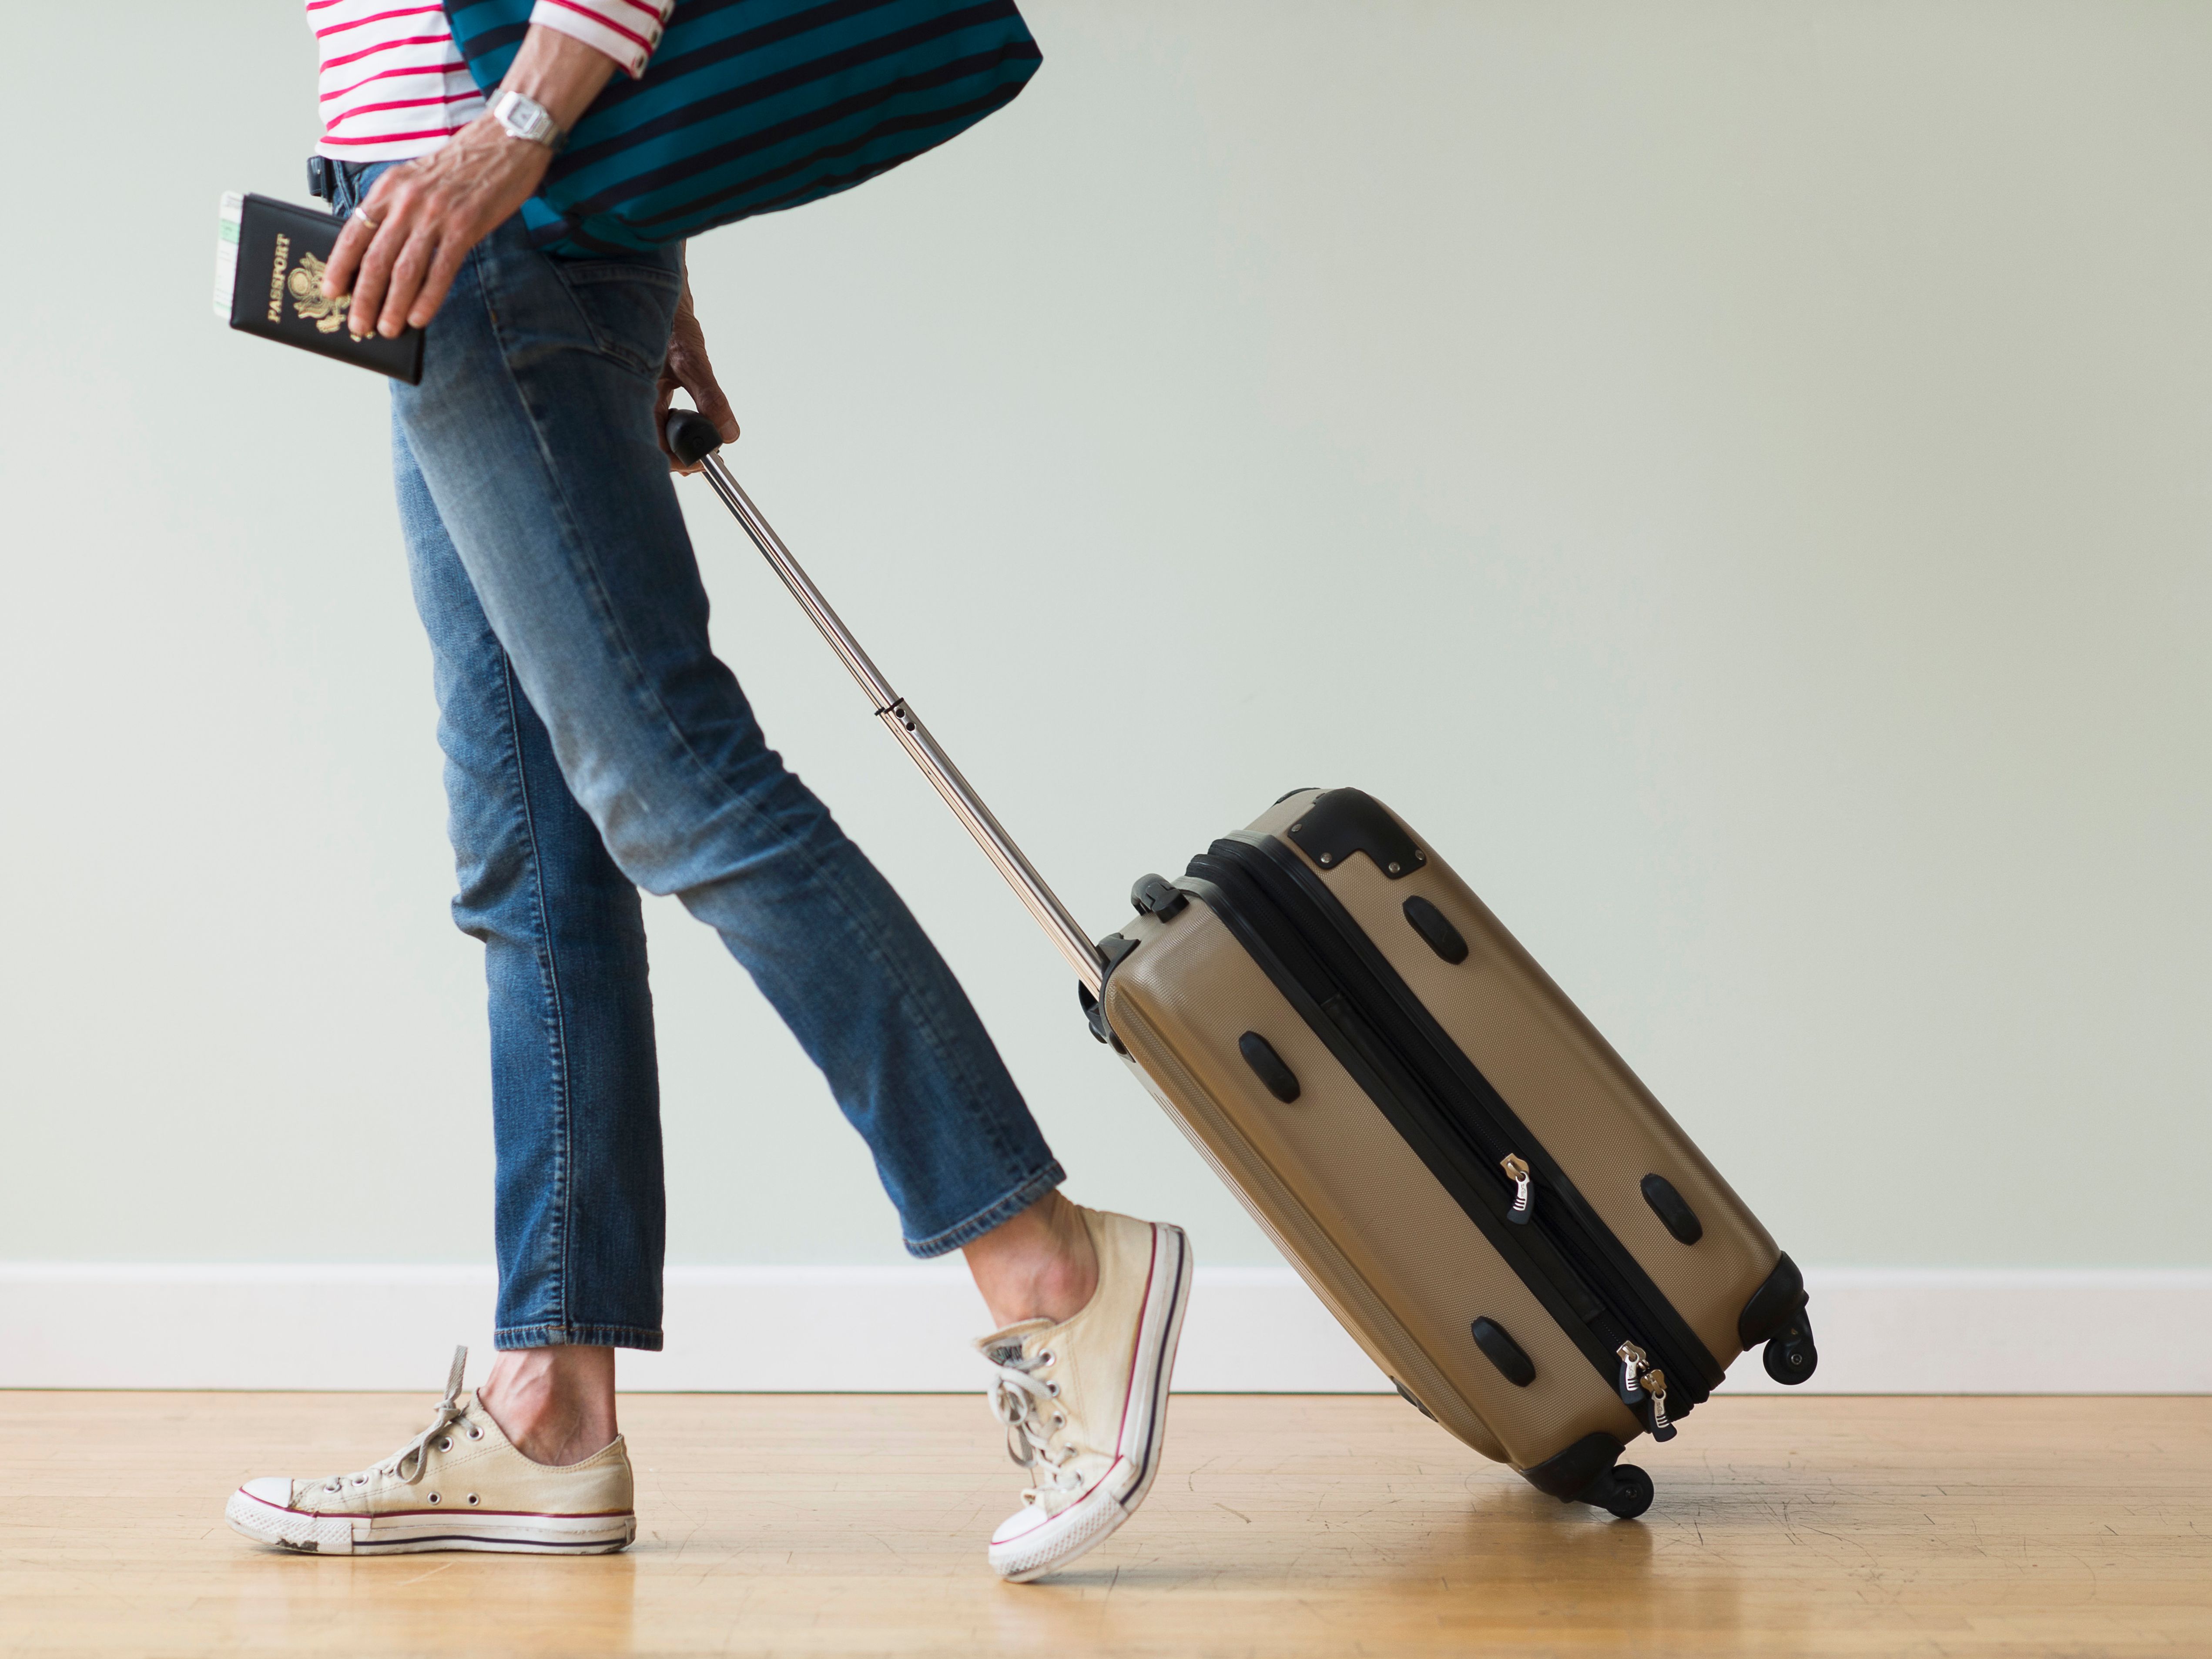 Des astuces et conseils pour alléger sa valise - Europe Escapade : le guide  idéal pour votre voyage en Europe